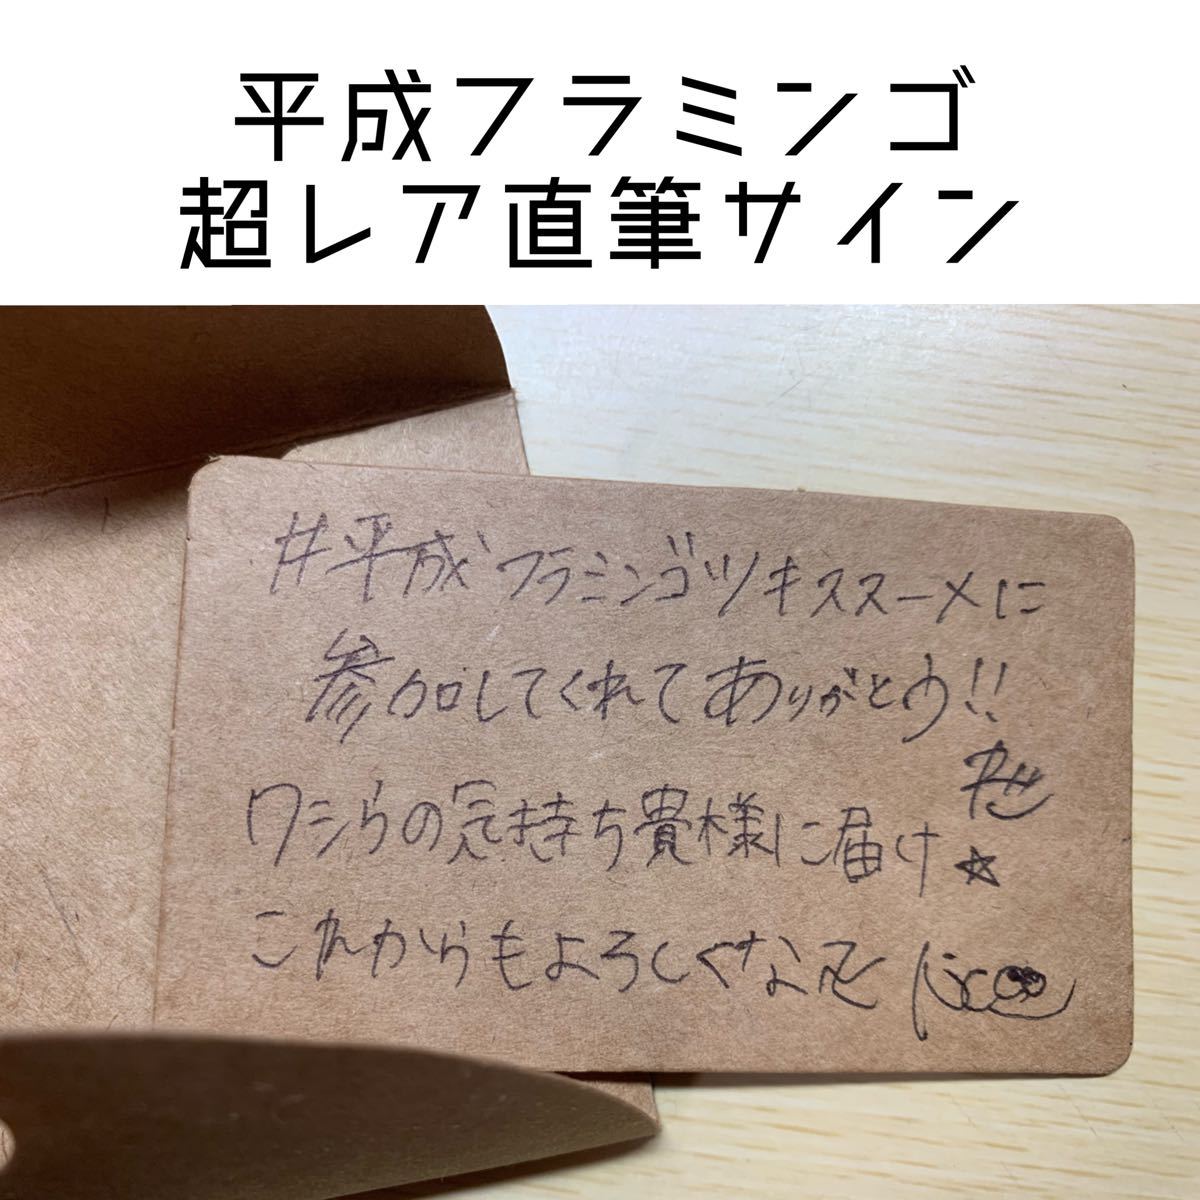 平成フラミンゴ 直筆サイン入り メッセージ プレゼント企画 YouTuber  直筆サイン色紙